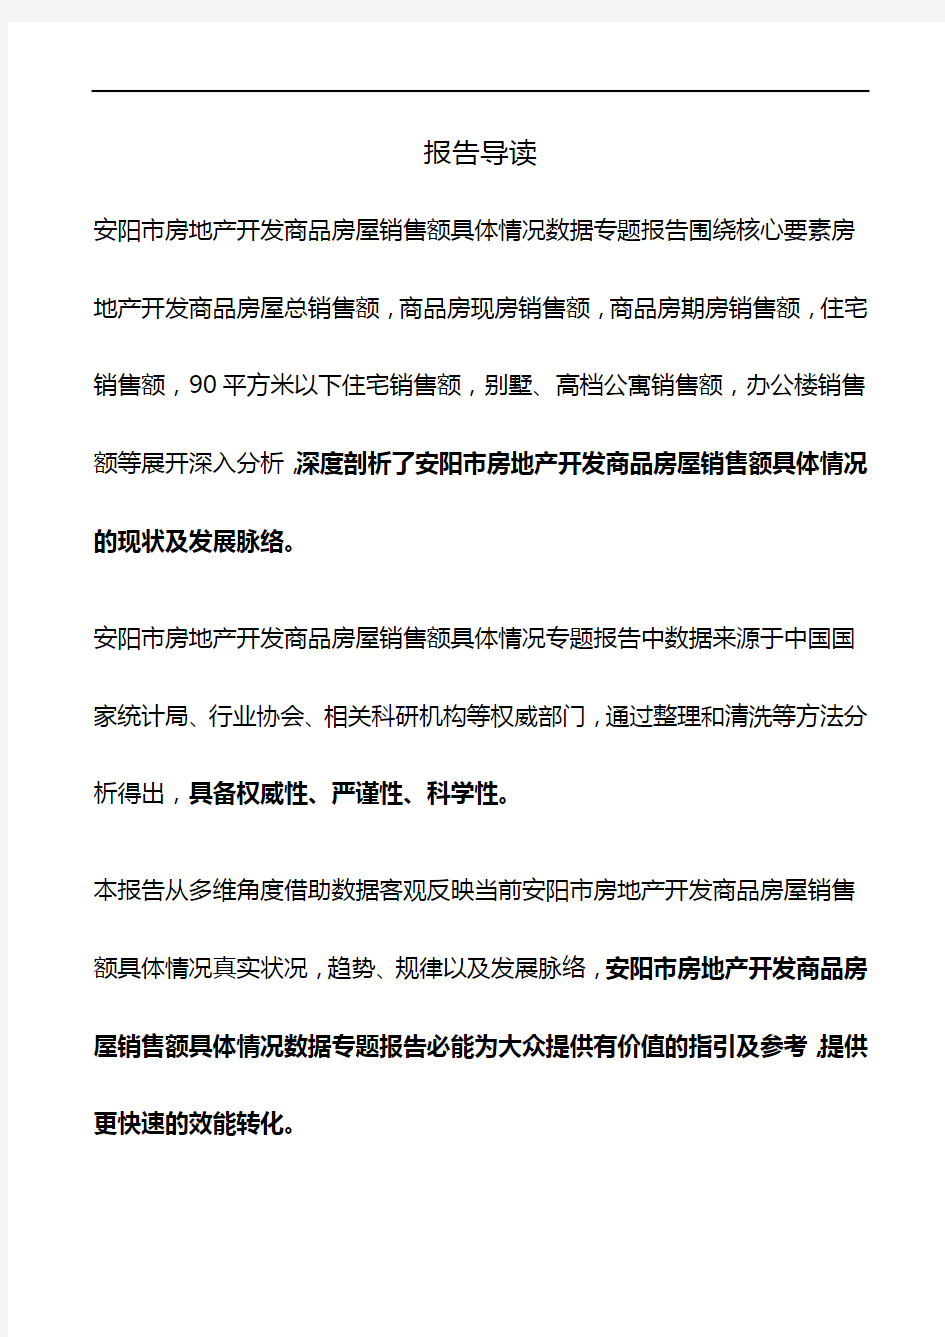 河南省安阳市房地产开发商品房屋销售额具体情况数据专题报告2019版